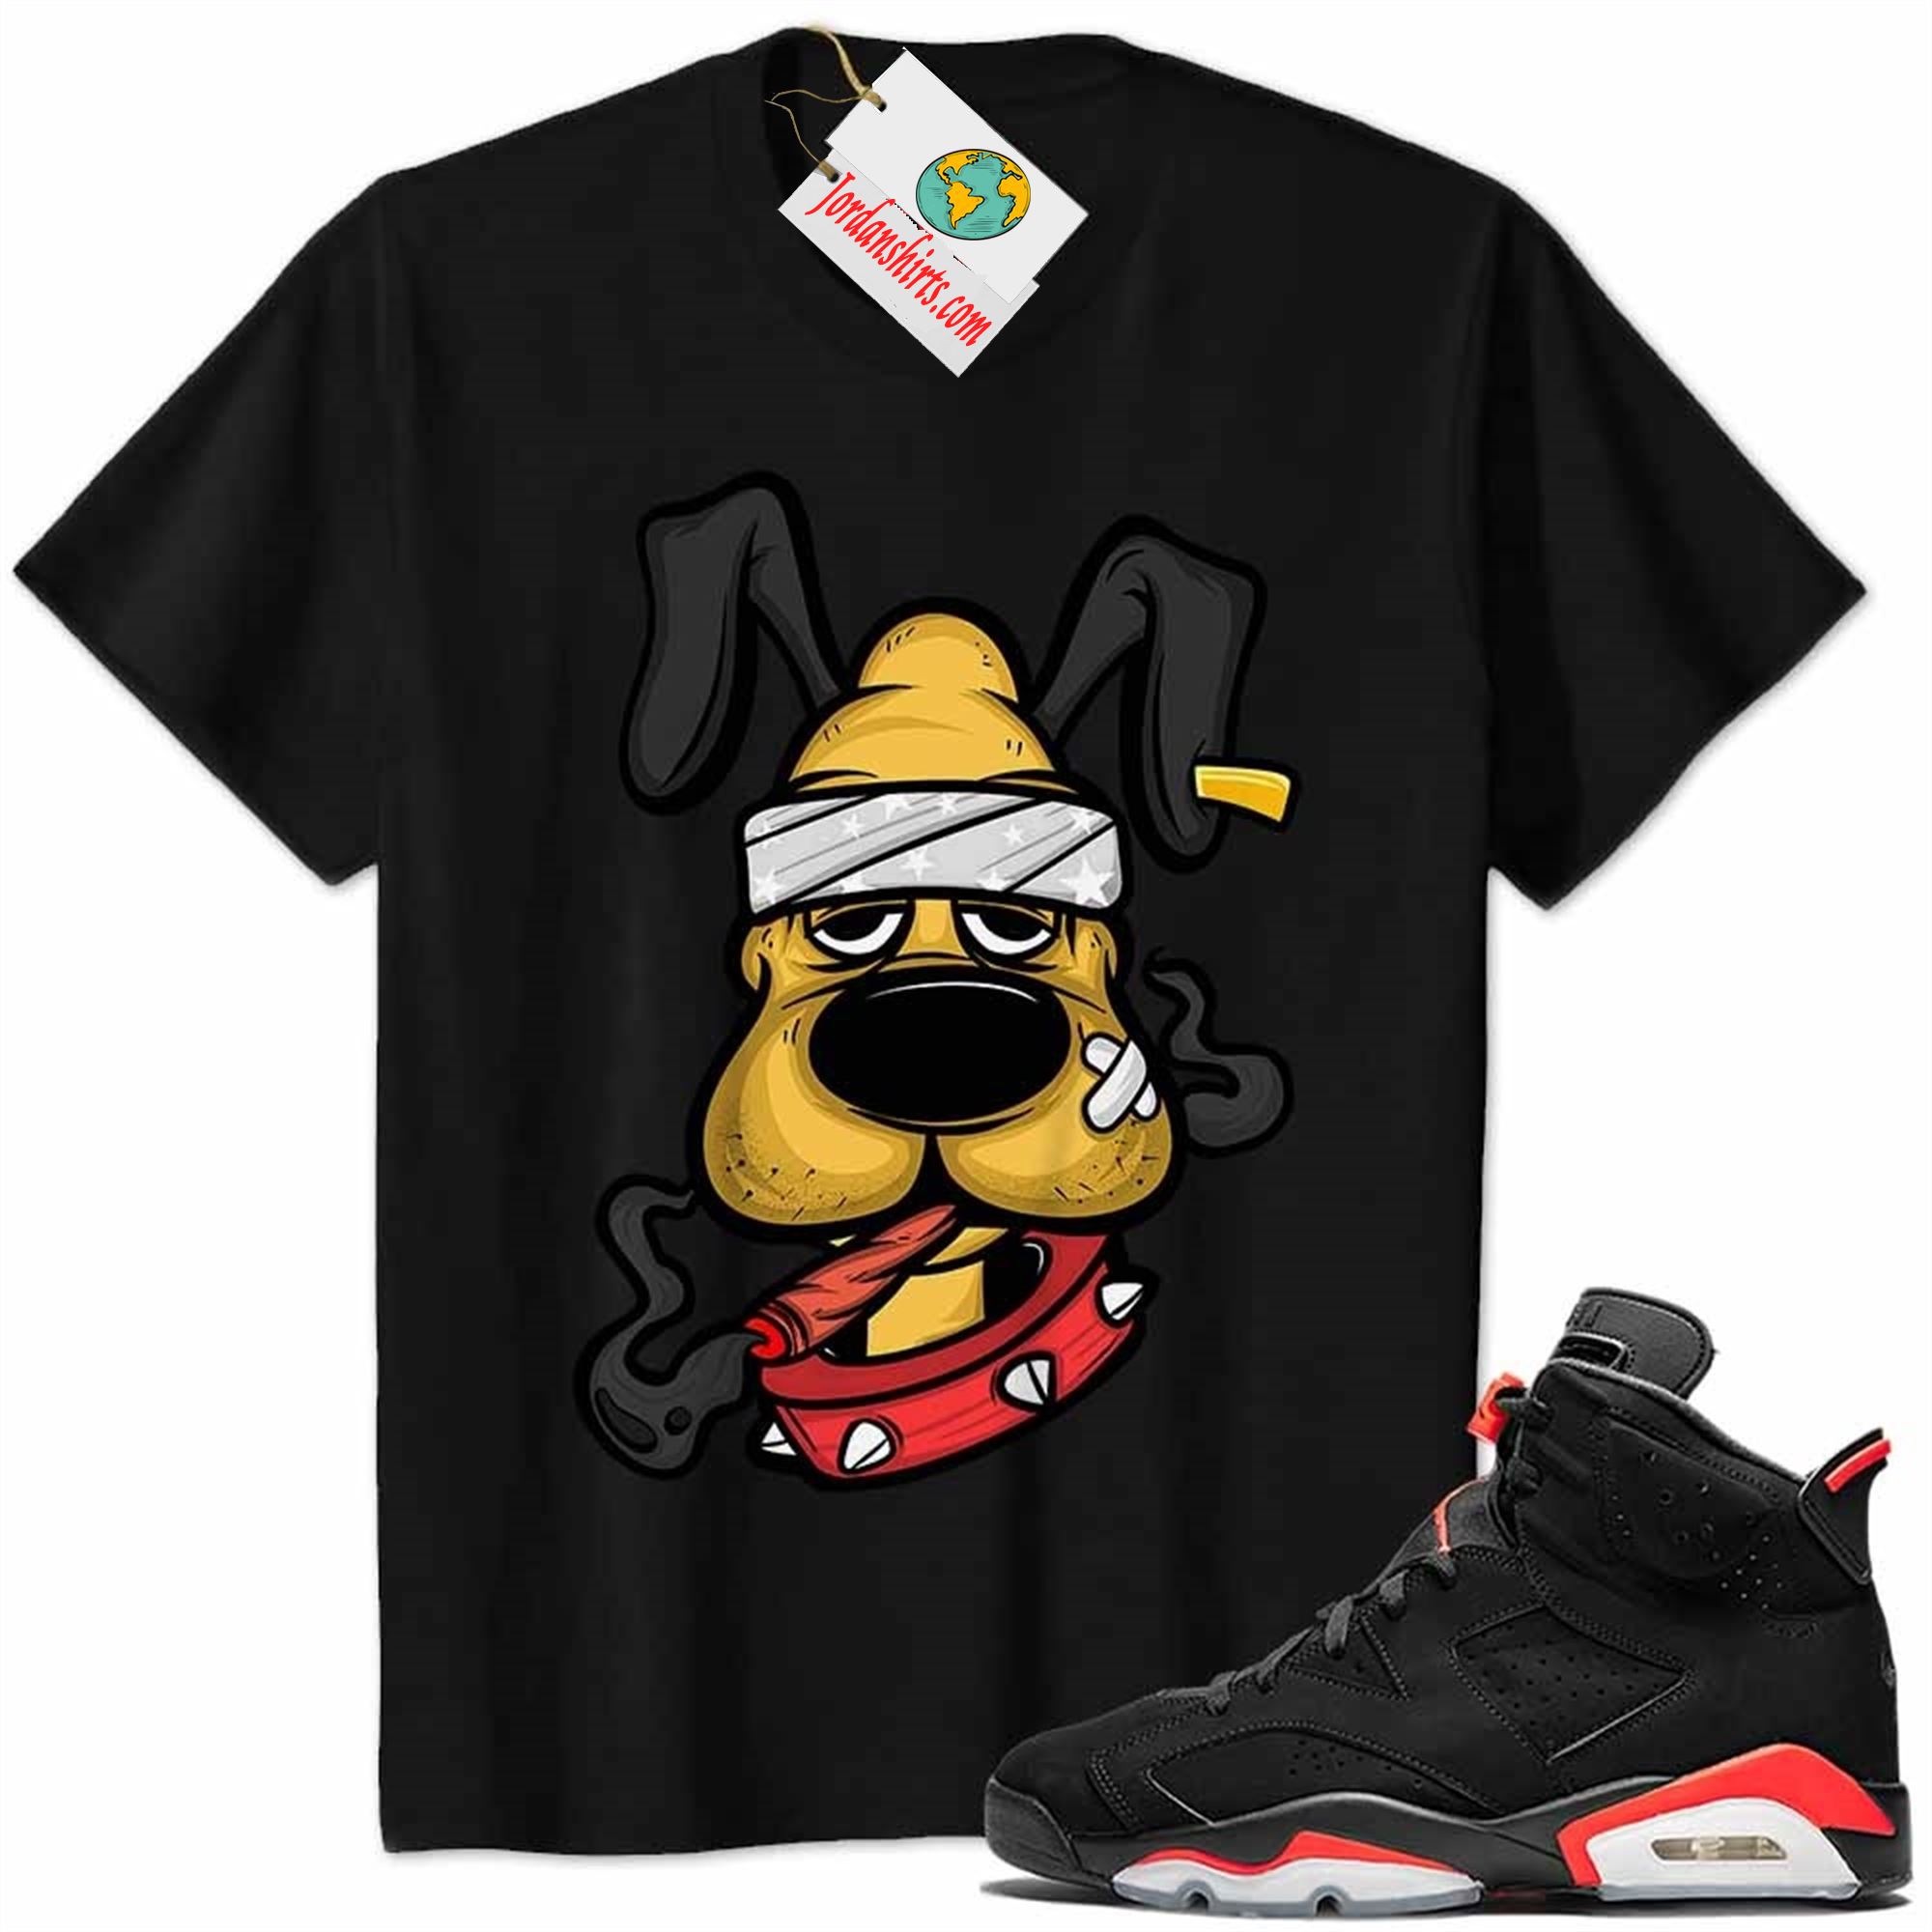 Jordan 6 Shirt, Gangster Pluto Smoke Weed Black Air Jordan 6 Infrared 6s Size Up To 5xl